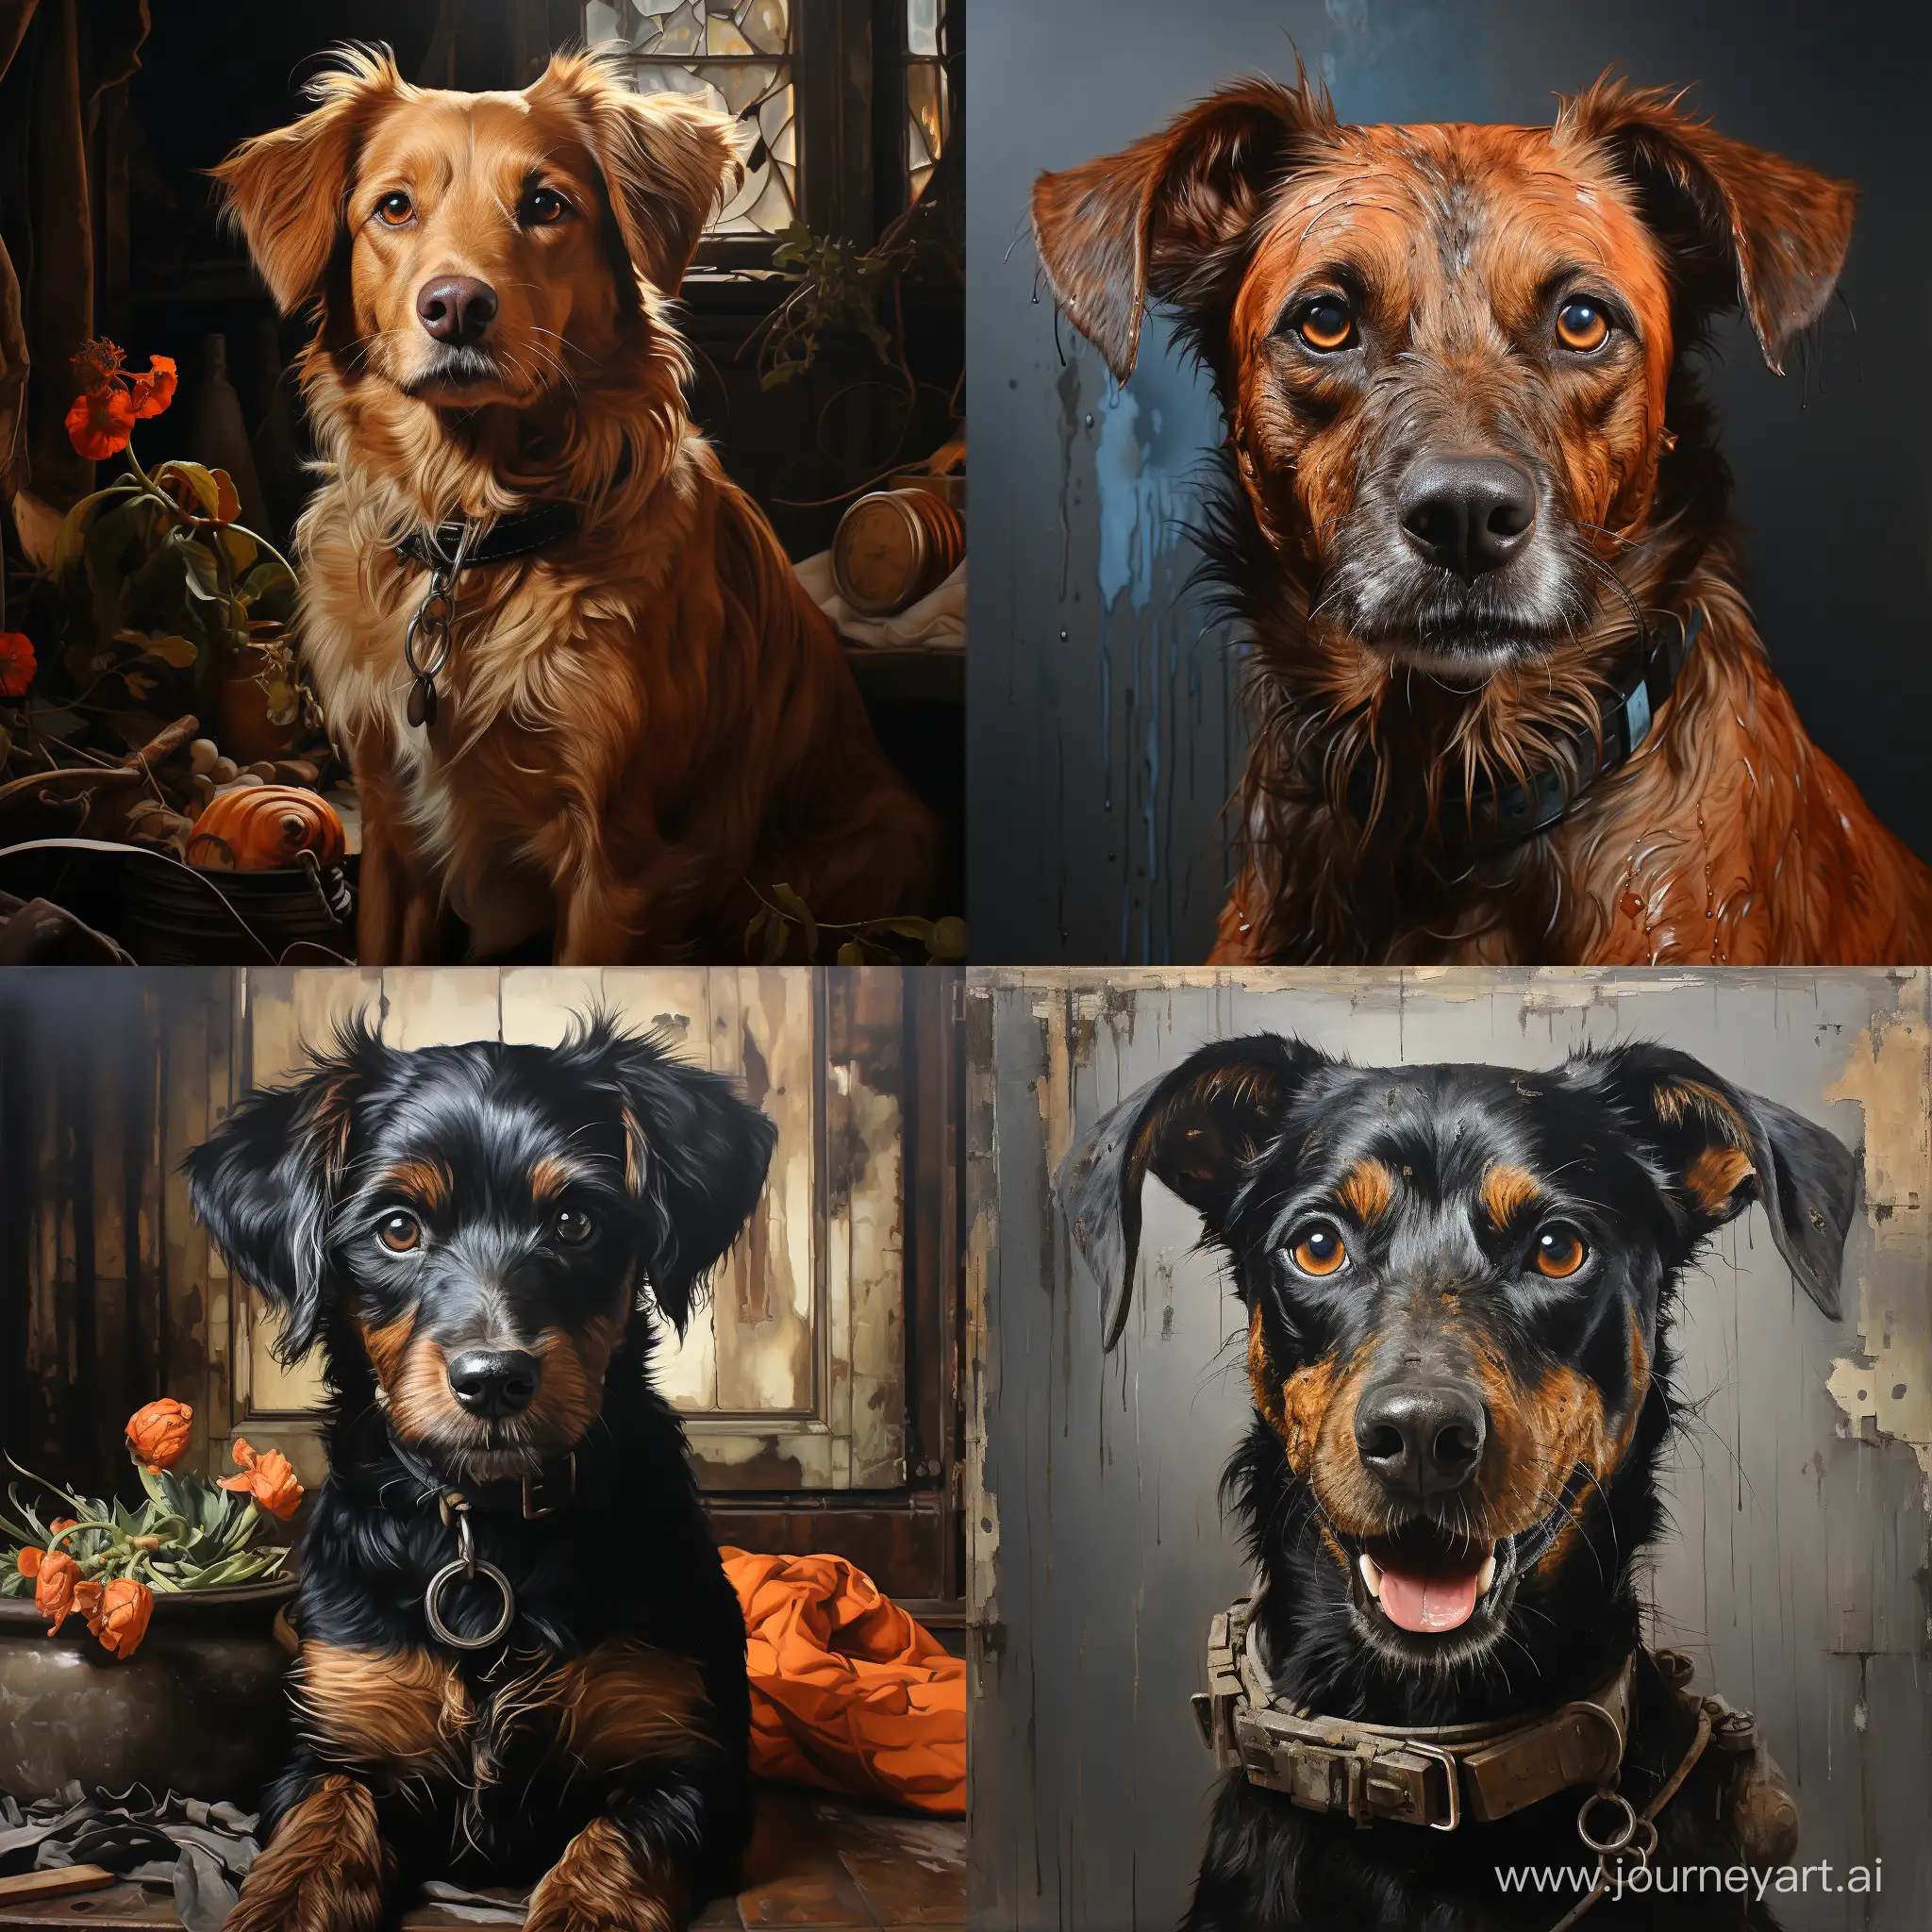 Adorable-Dog-Portrait-with-1000-Pixels-Aspect-Ratio-11-and-Unique-Composition